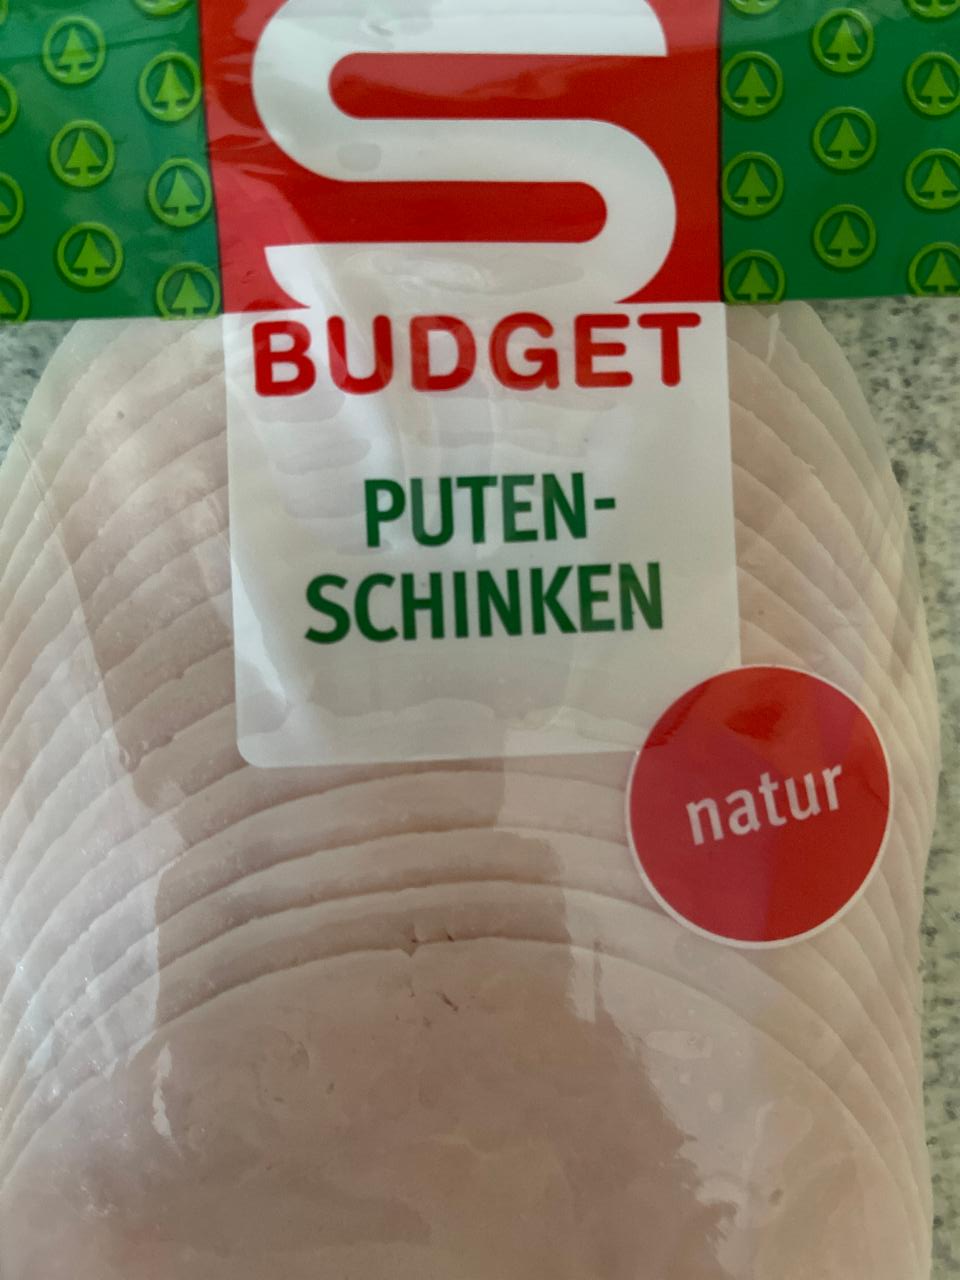 Fotografie - Putenschinken natur S Budget